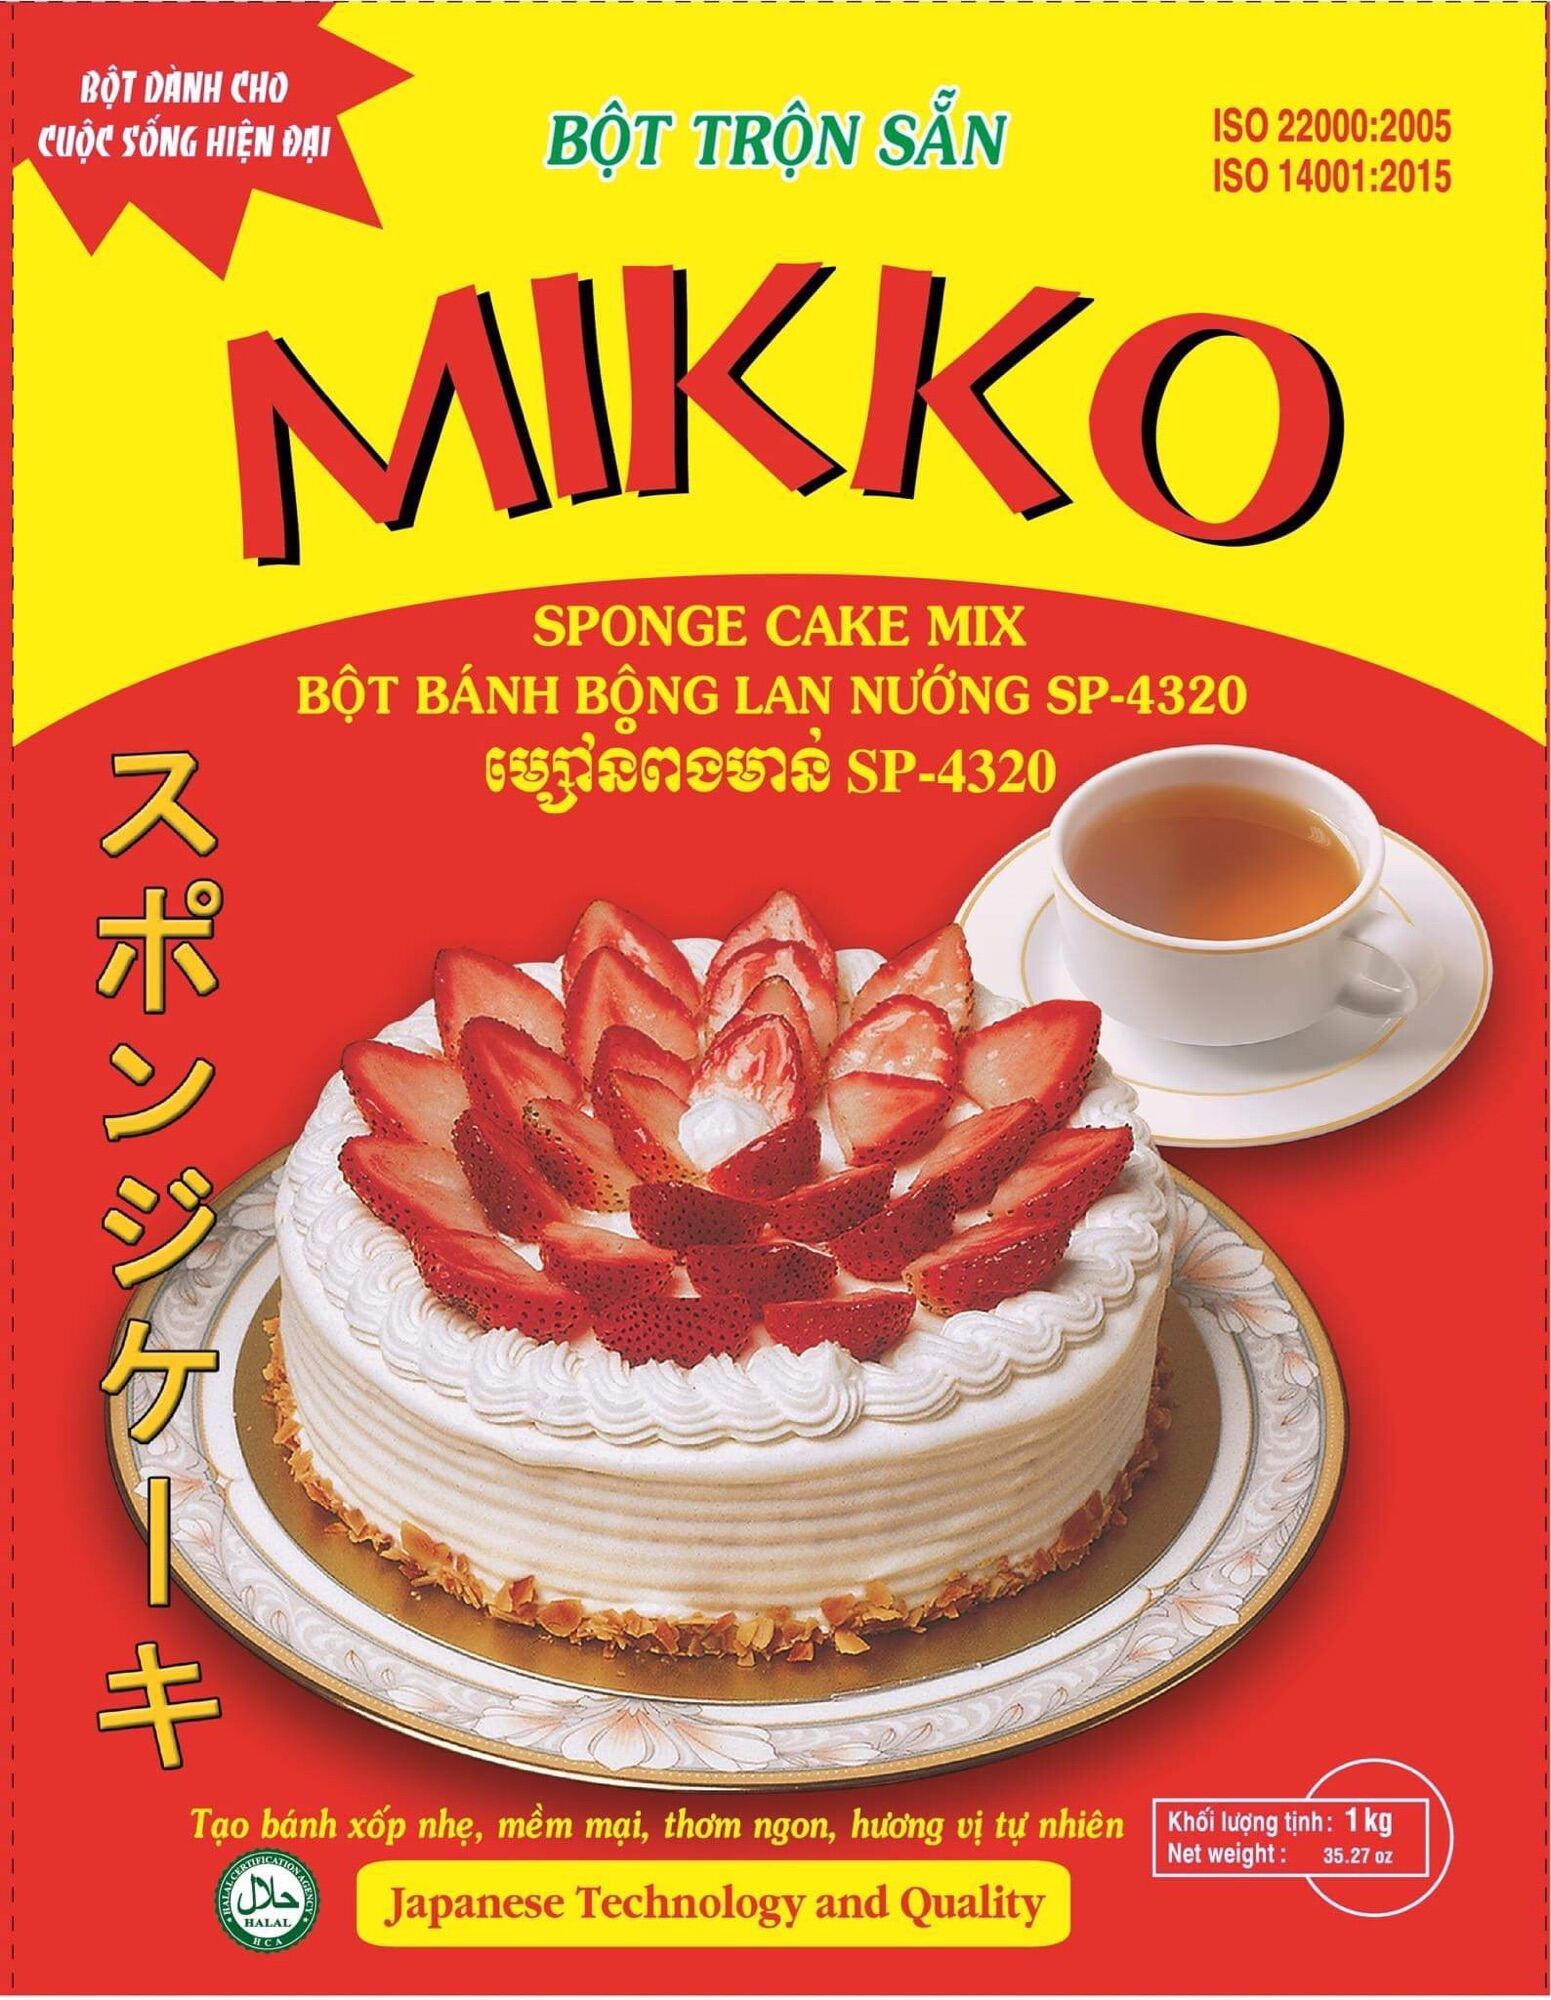 Bột bánh bông lan nướng Mikko Hương Xưa 1kg